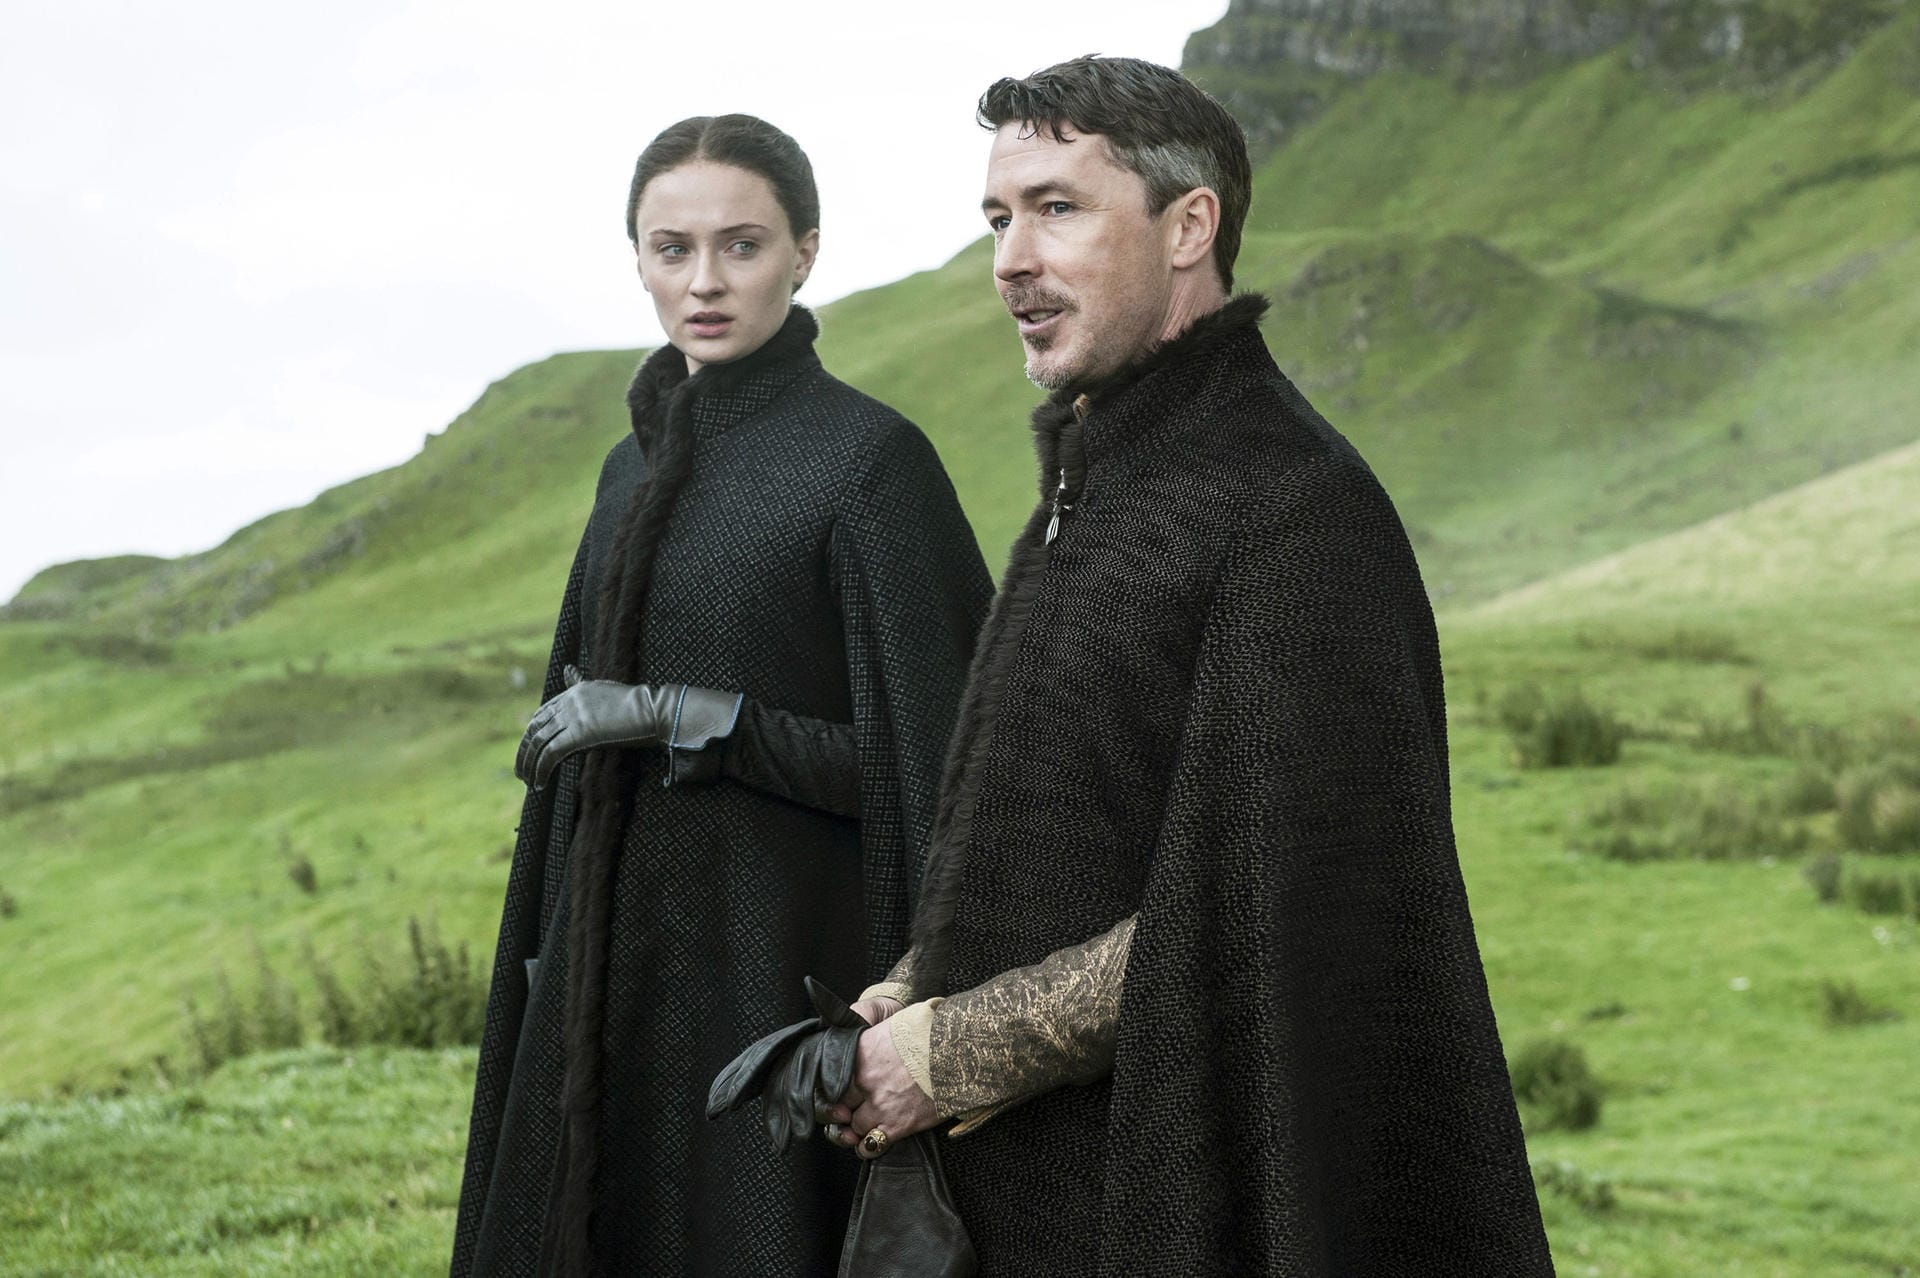 Aidan Gillen an der Seite von Sophie Turner in ihren Rollen als Petyr "Littlefinger" Baelish und Sansa Stark in "Game of Thrones". Für Sophie Turner ist "Game of Thrones" das Debüt vor der Kamera.